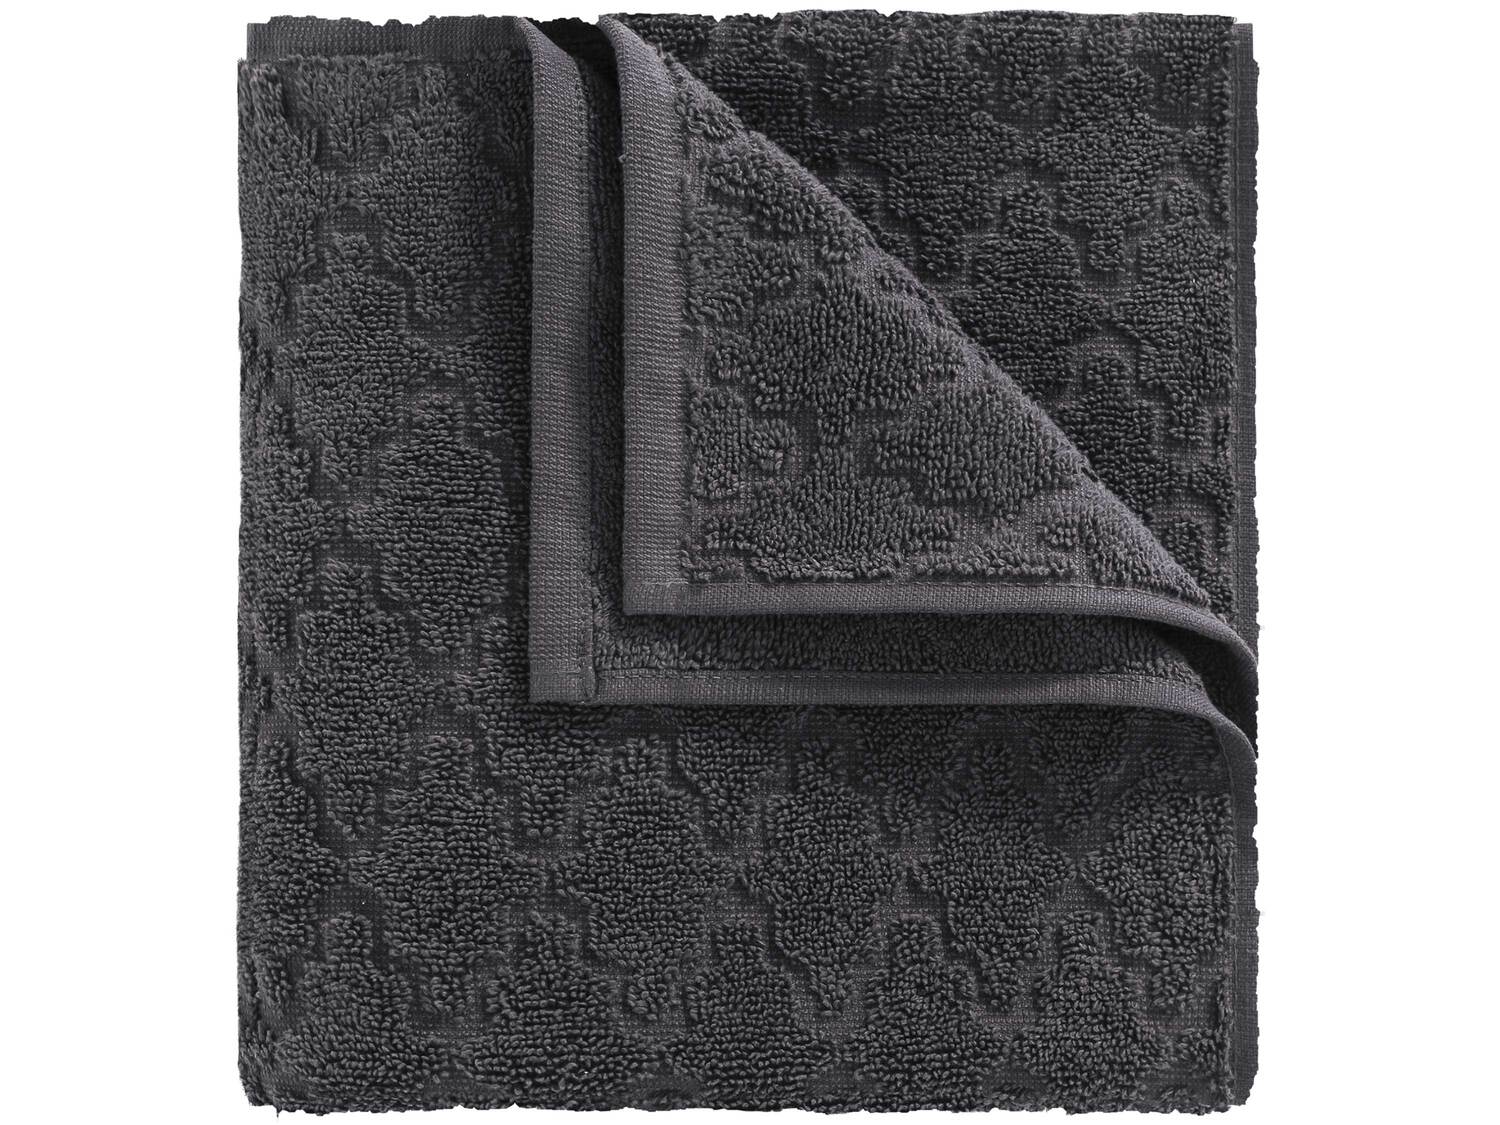 Ręcznik 50 x 100 cm , cena 11,99 PLN 
4 wzory 
- 100% bawełny
- miękkie i ...